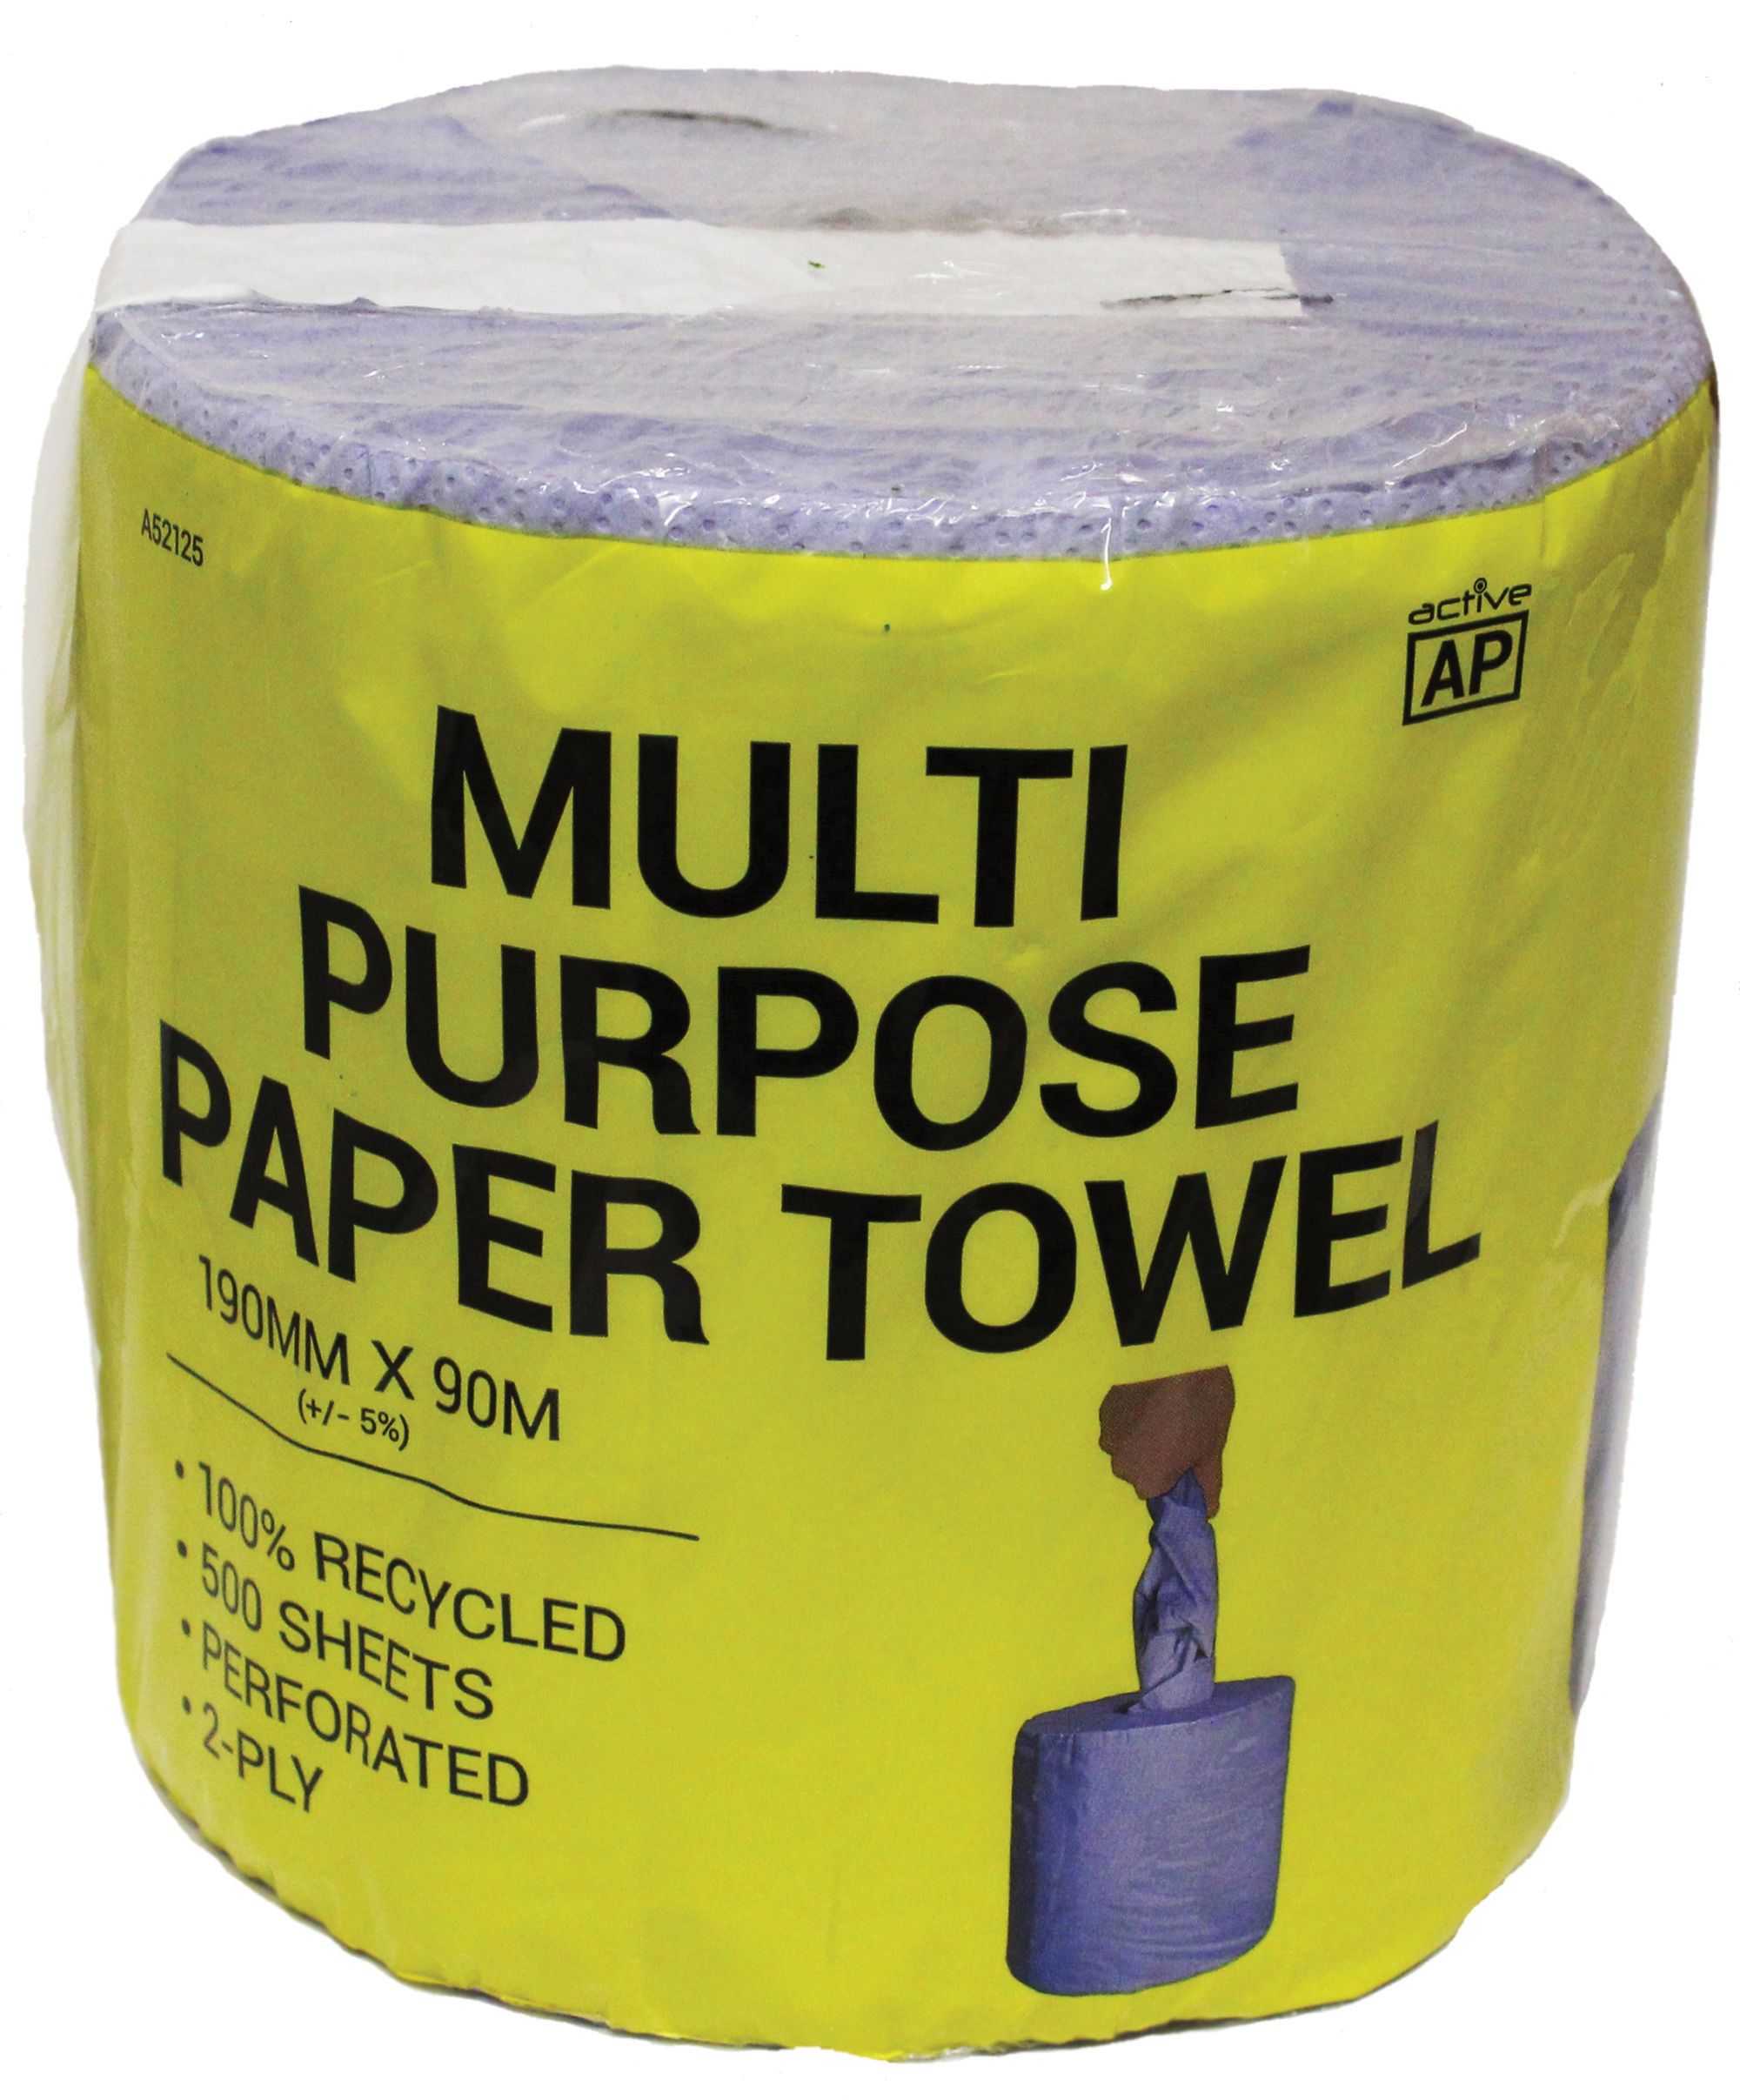 Image of Ap Multi Purpose Paper Towel Roll 500 Sheets